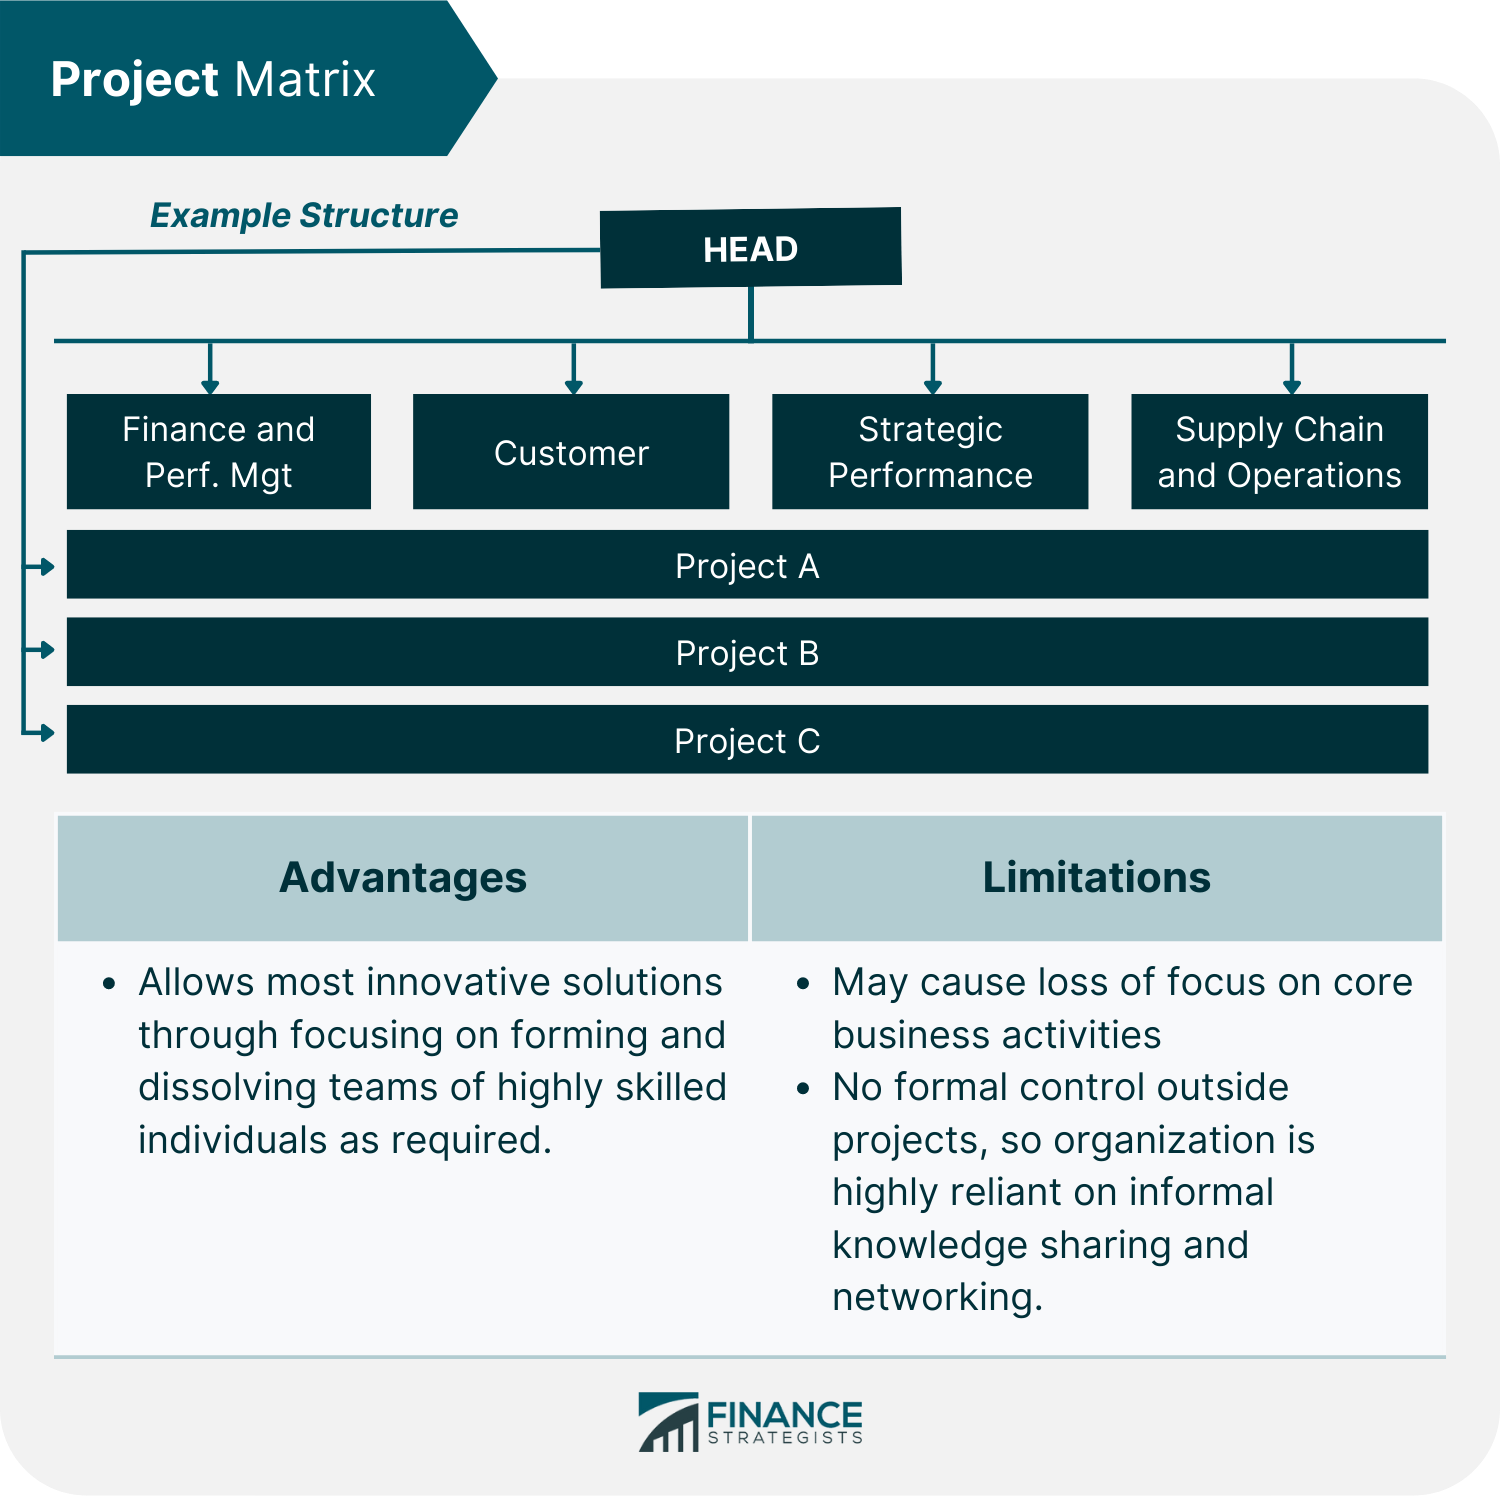 Project Matrix